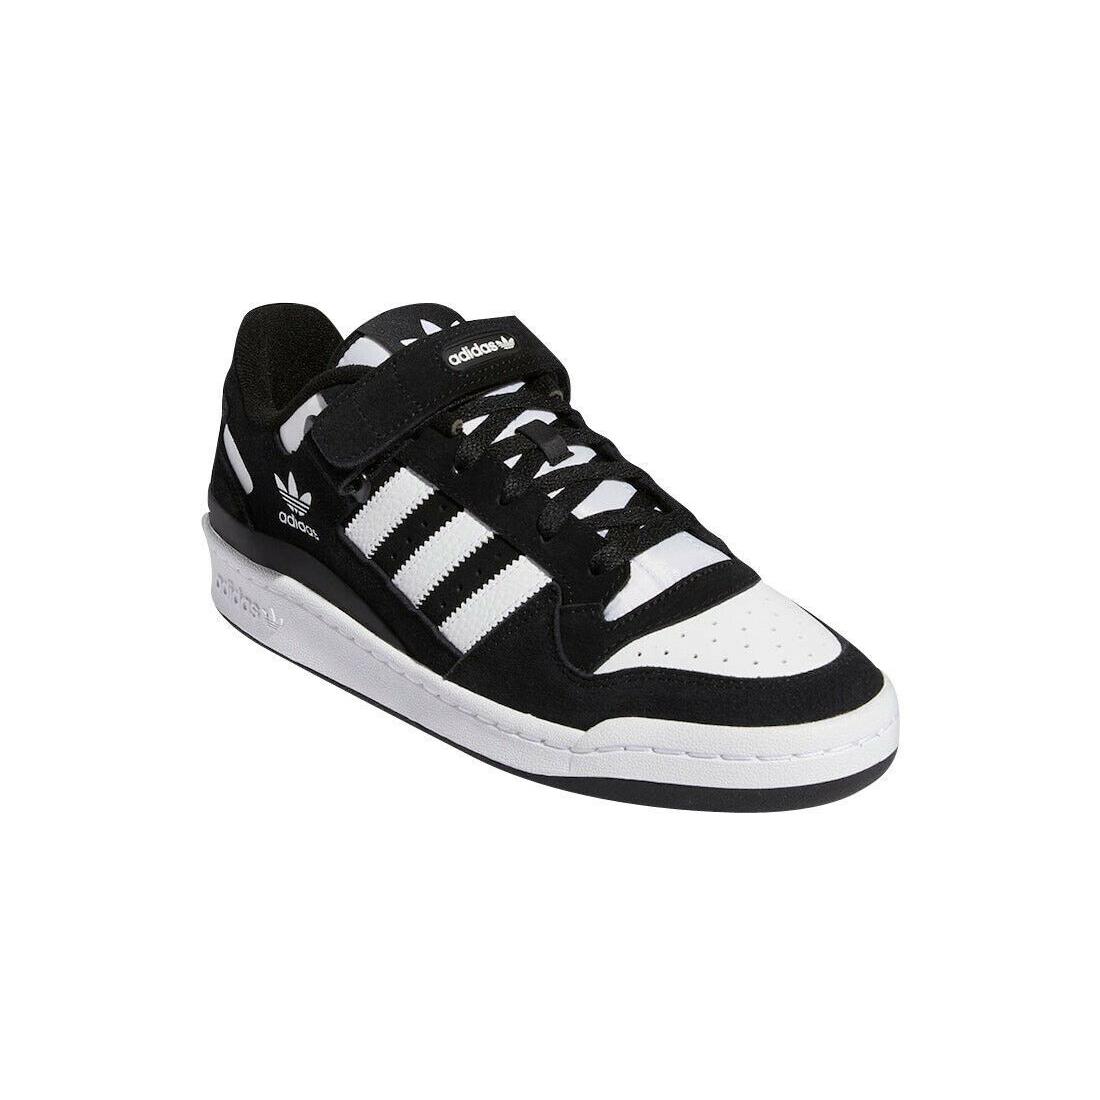 Adidas shoes Originals - Black 3